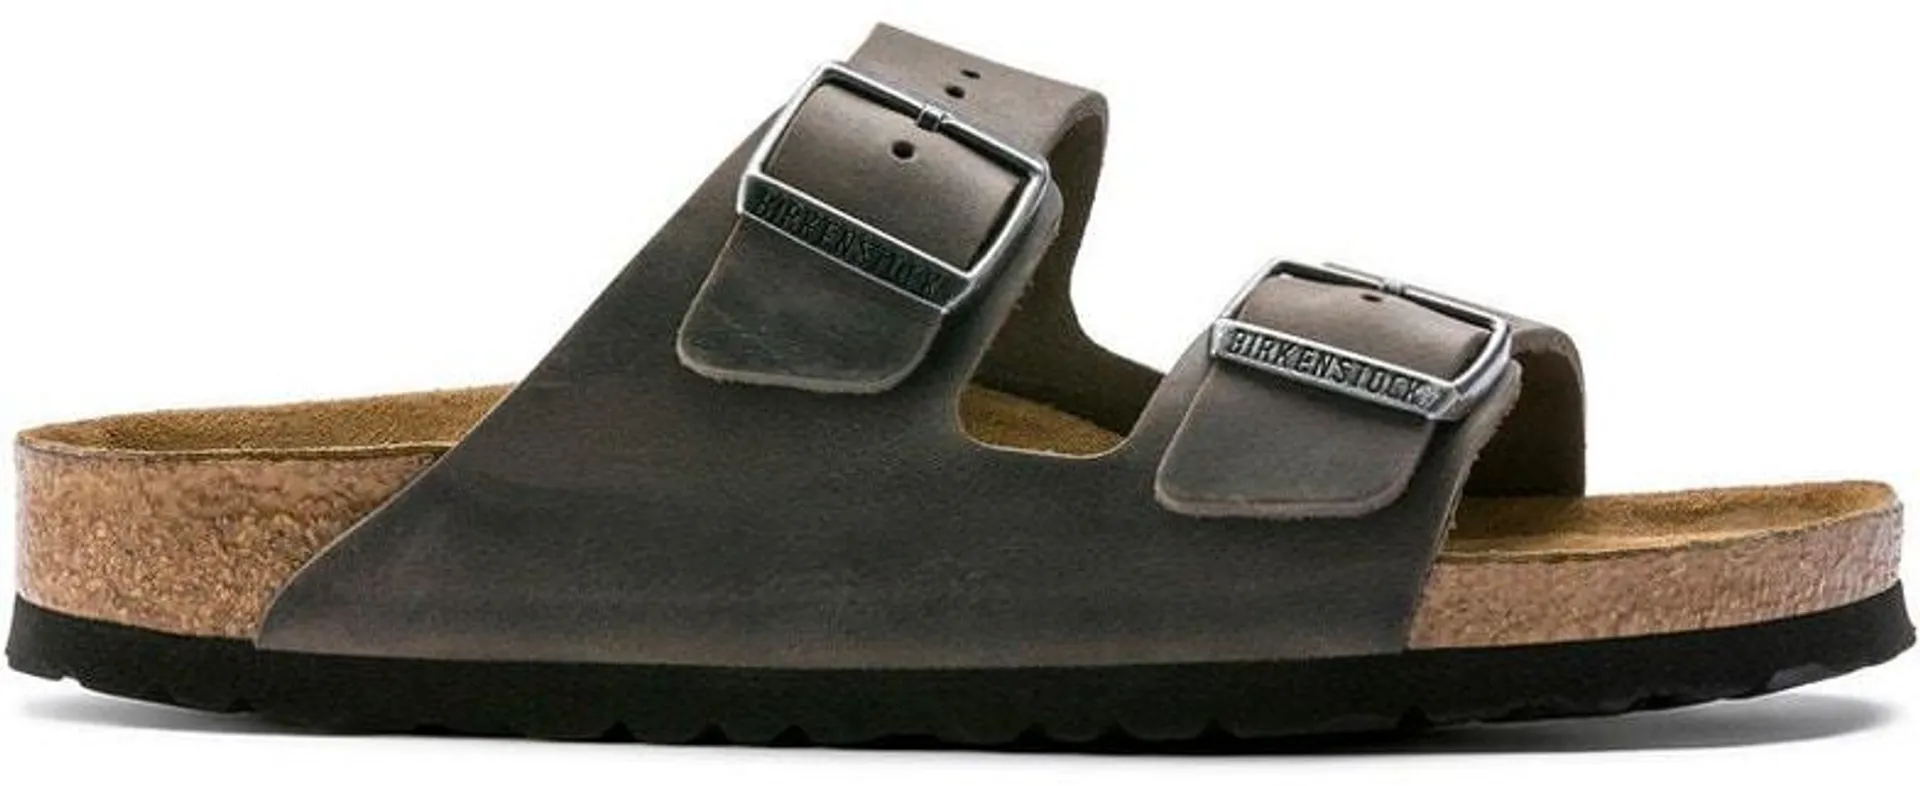 Birkenstock Arizona Soft Footbed Sandals - Men's